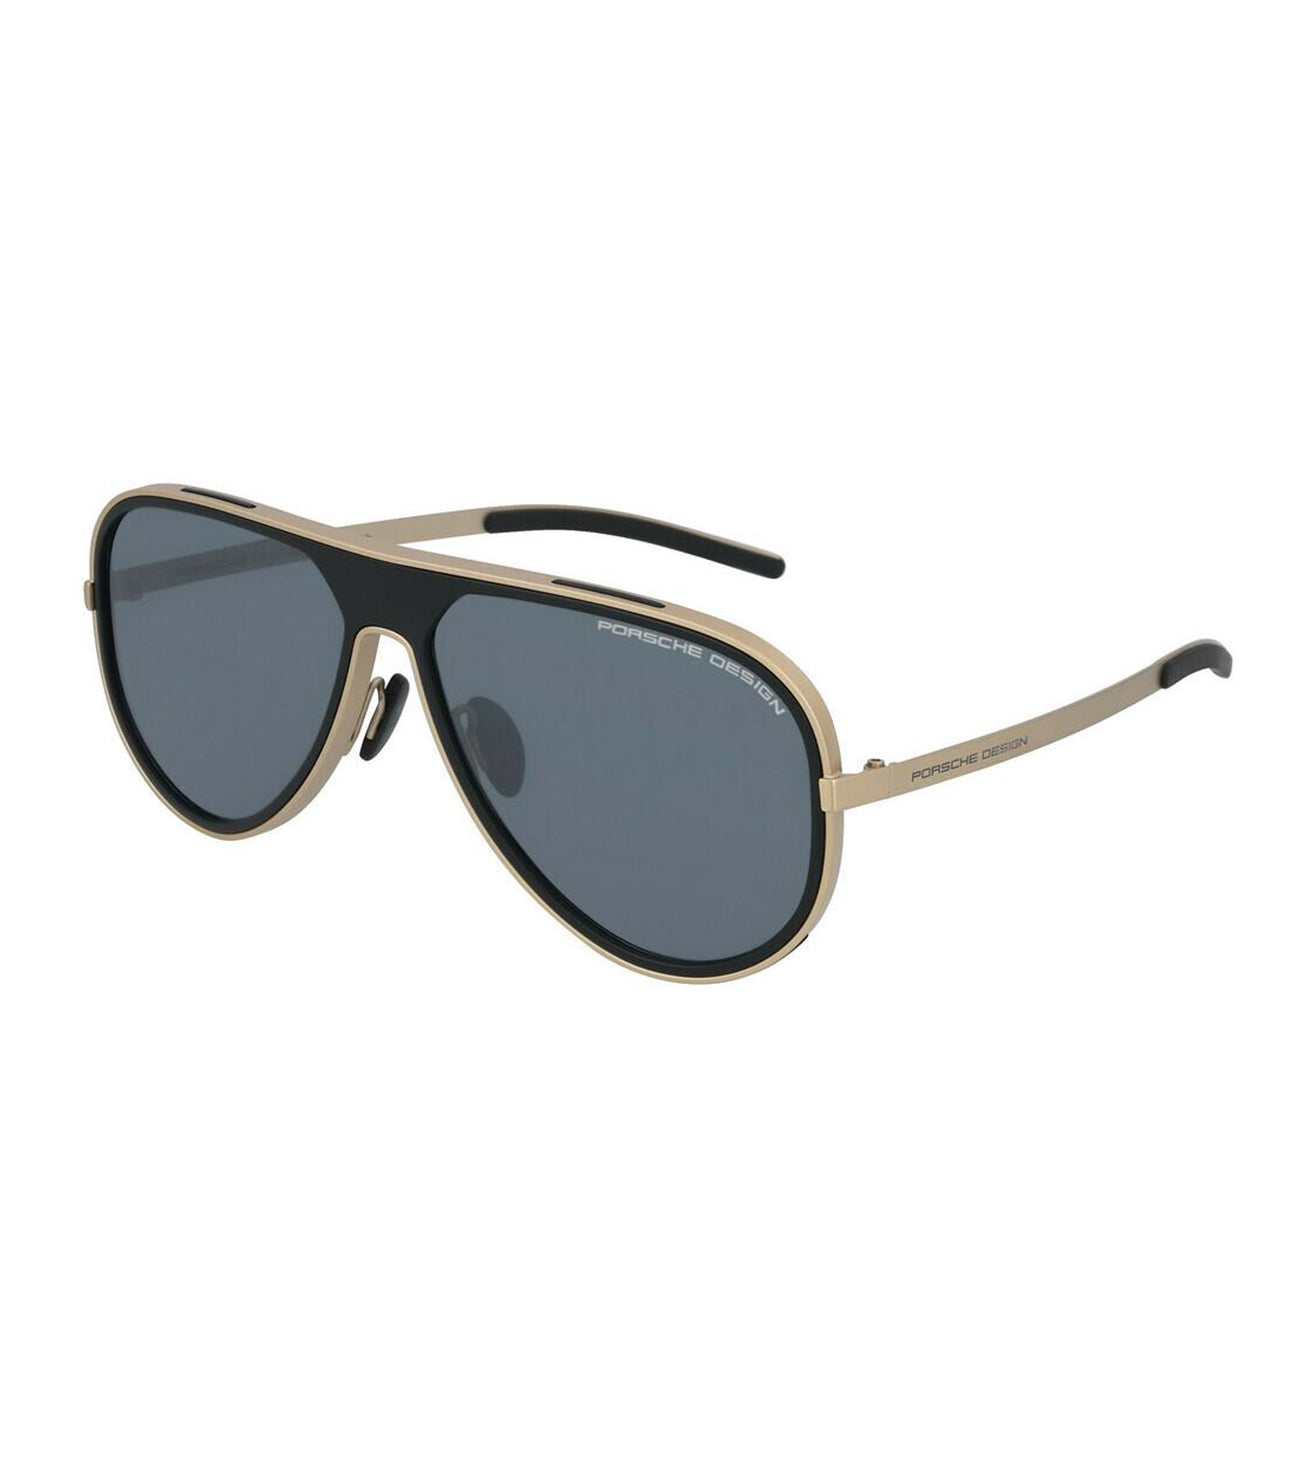 Porsche Design Men's Blue-mirror Square Sunglasses